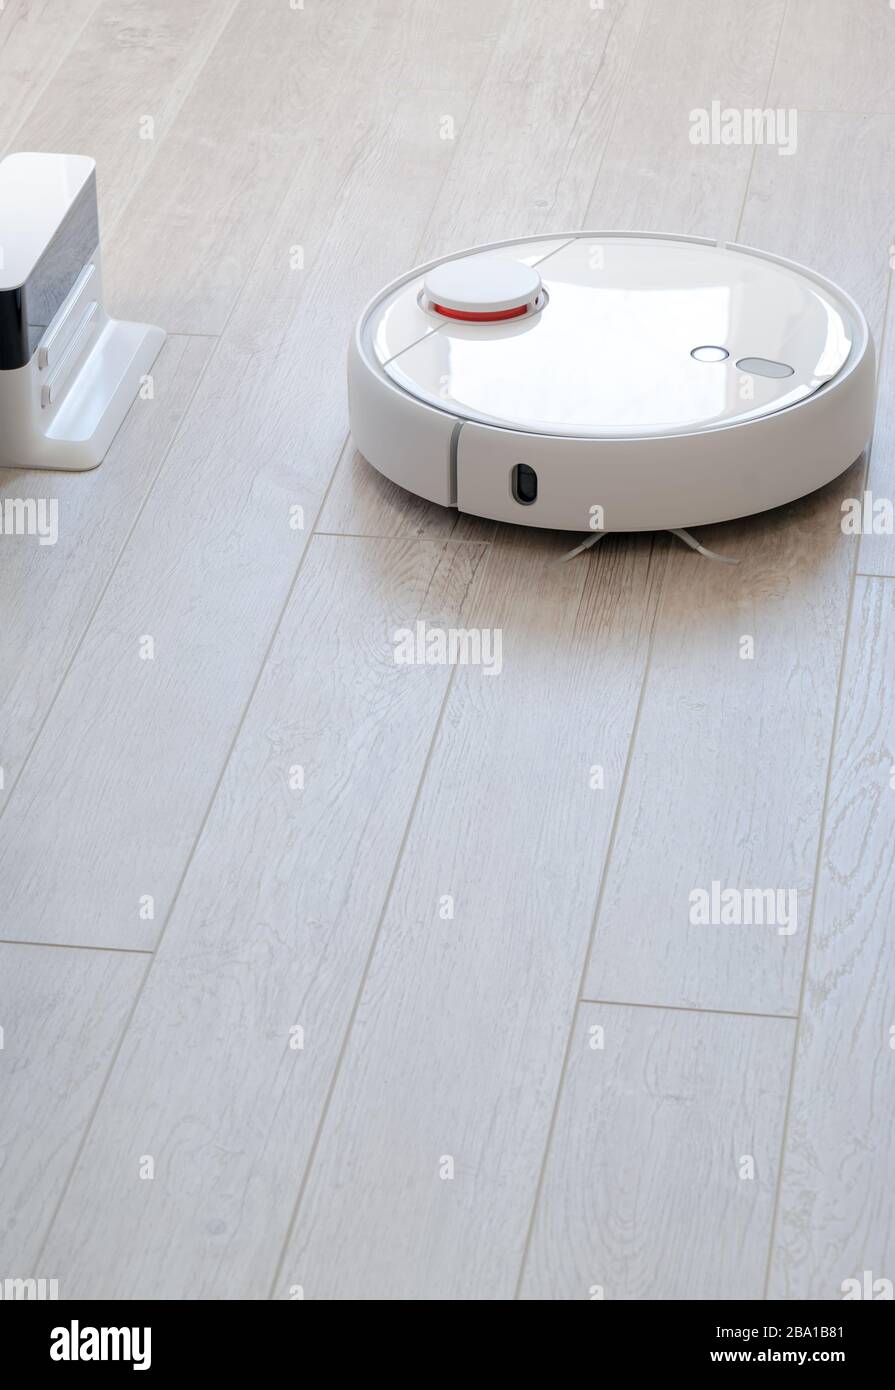 Aspirateur robotisé rond blanc sur stratifié - travaux ménagers technologiques Banque D'Images